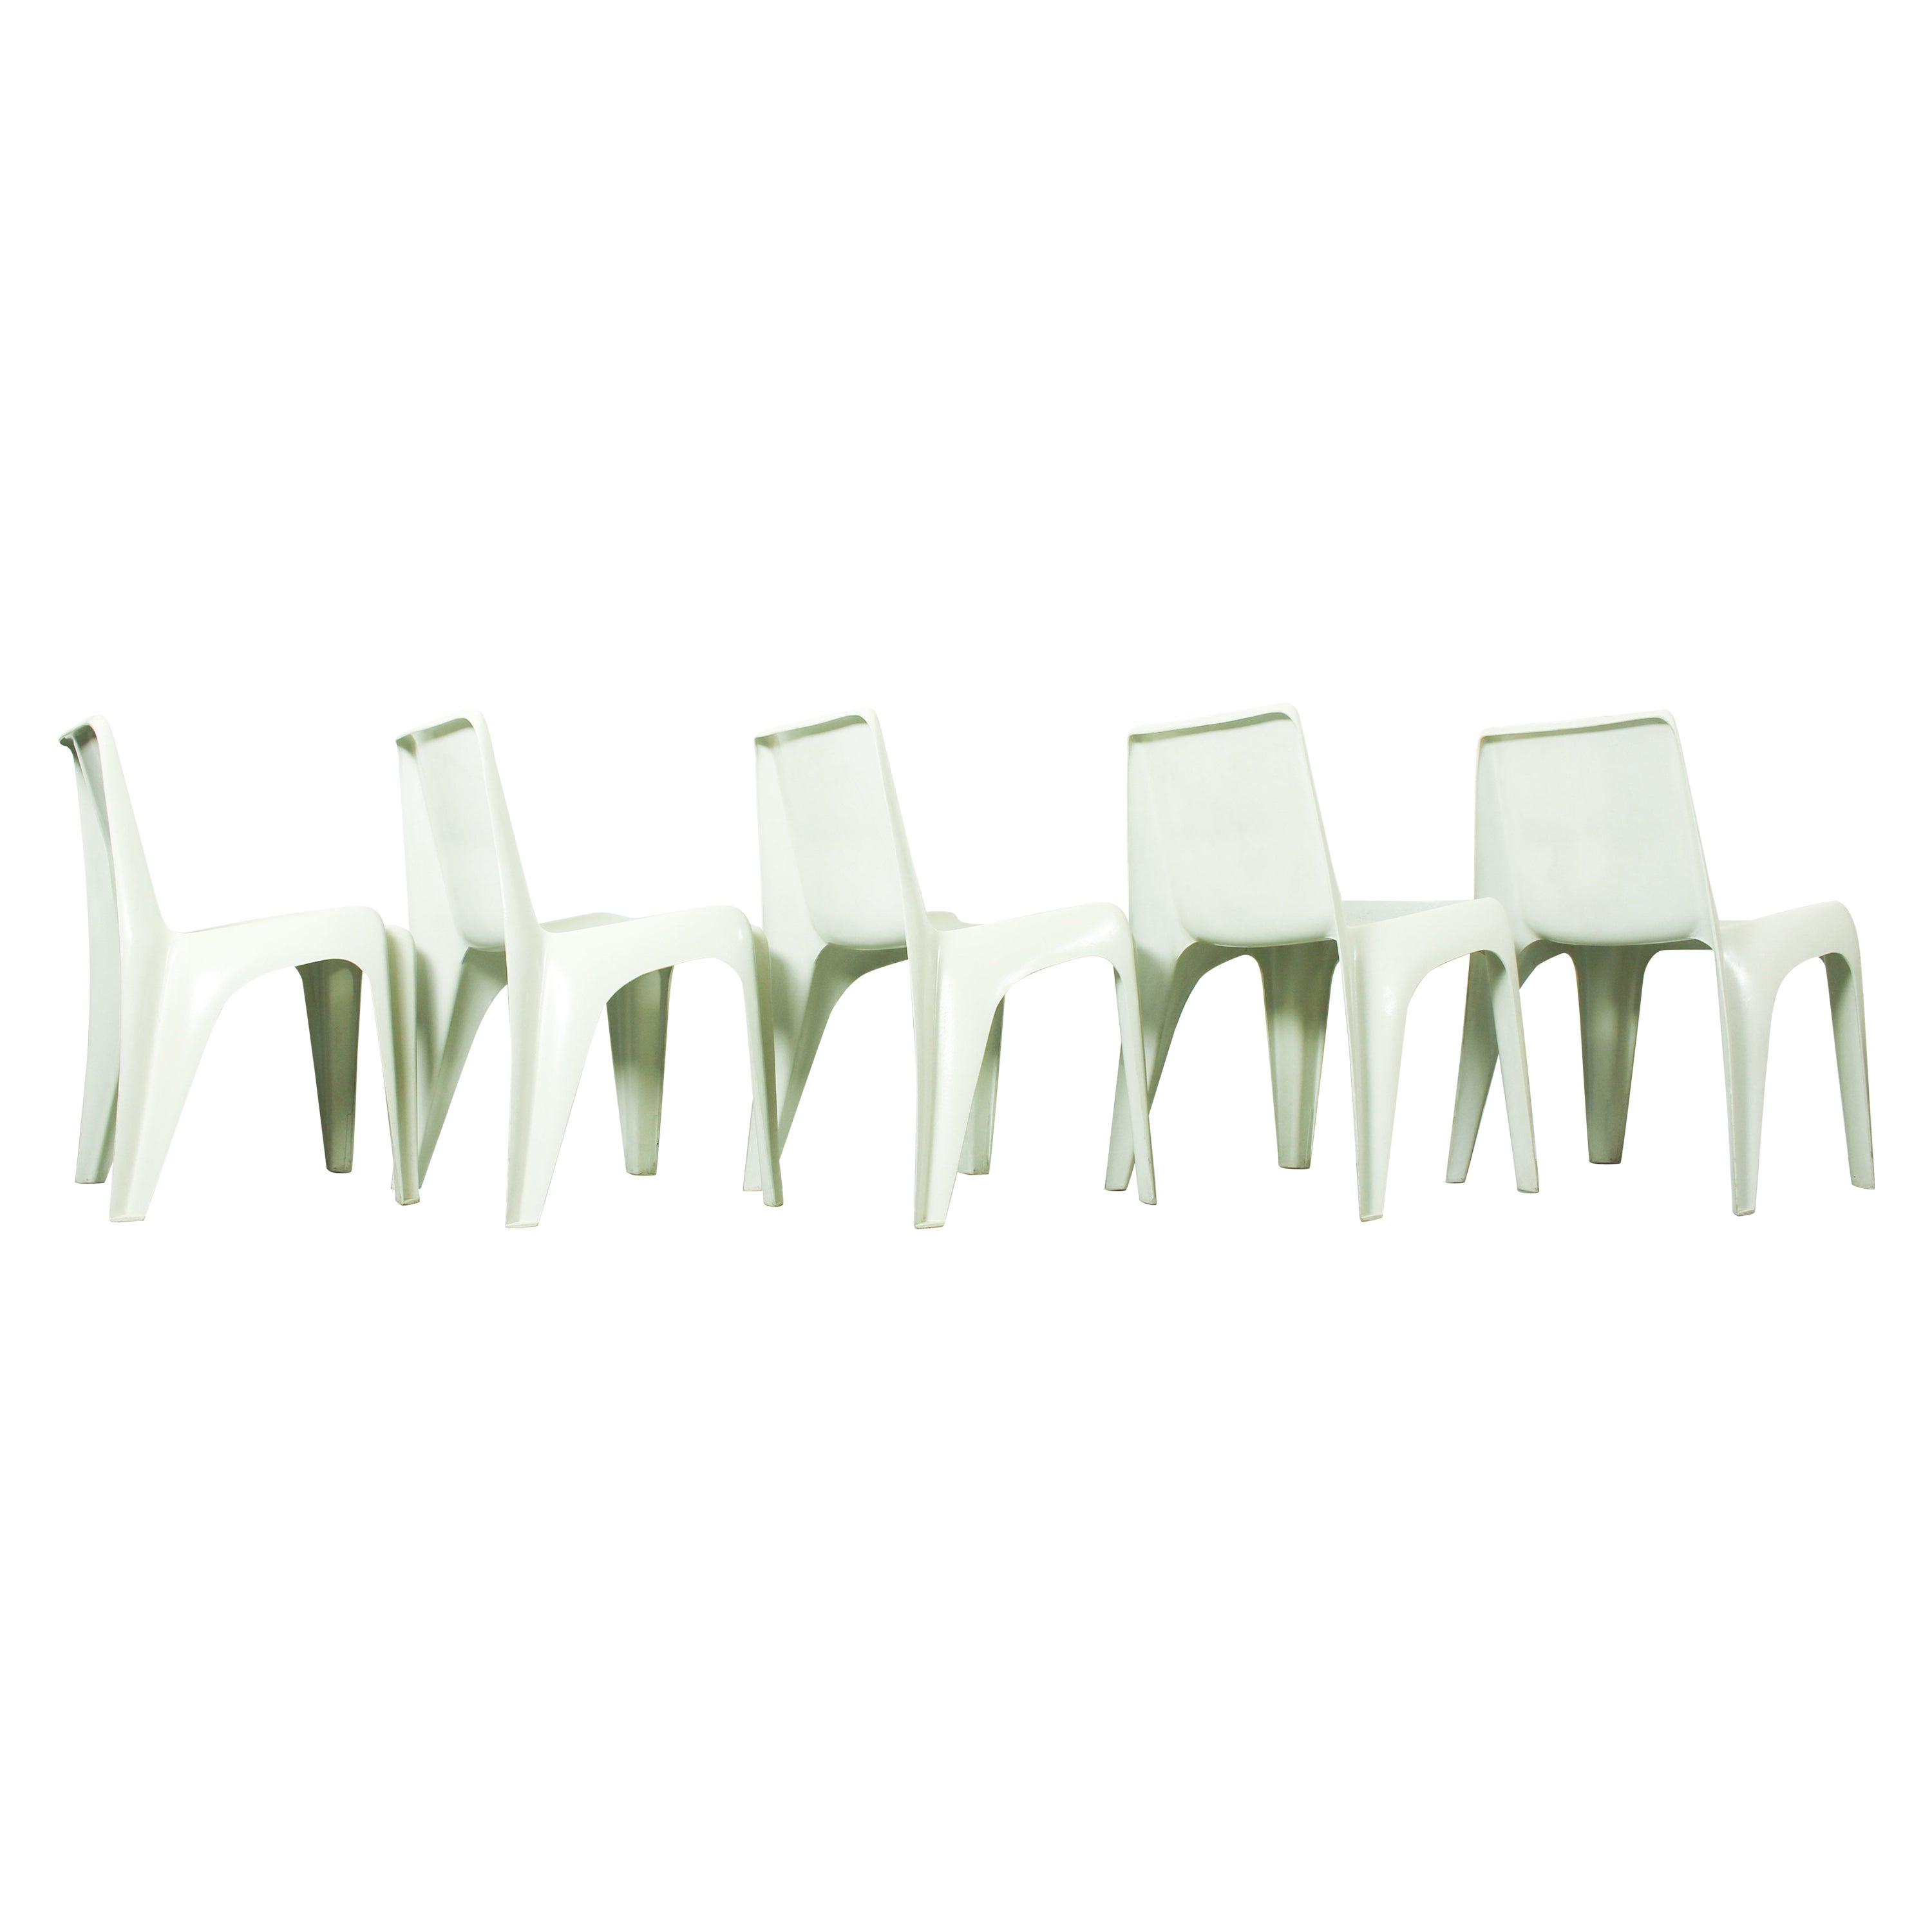 Set of 5 chairs model no BA 1171 designed by Helmut Bätzner for Bofinger, German For Sale